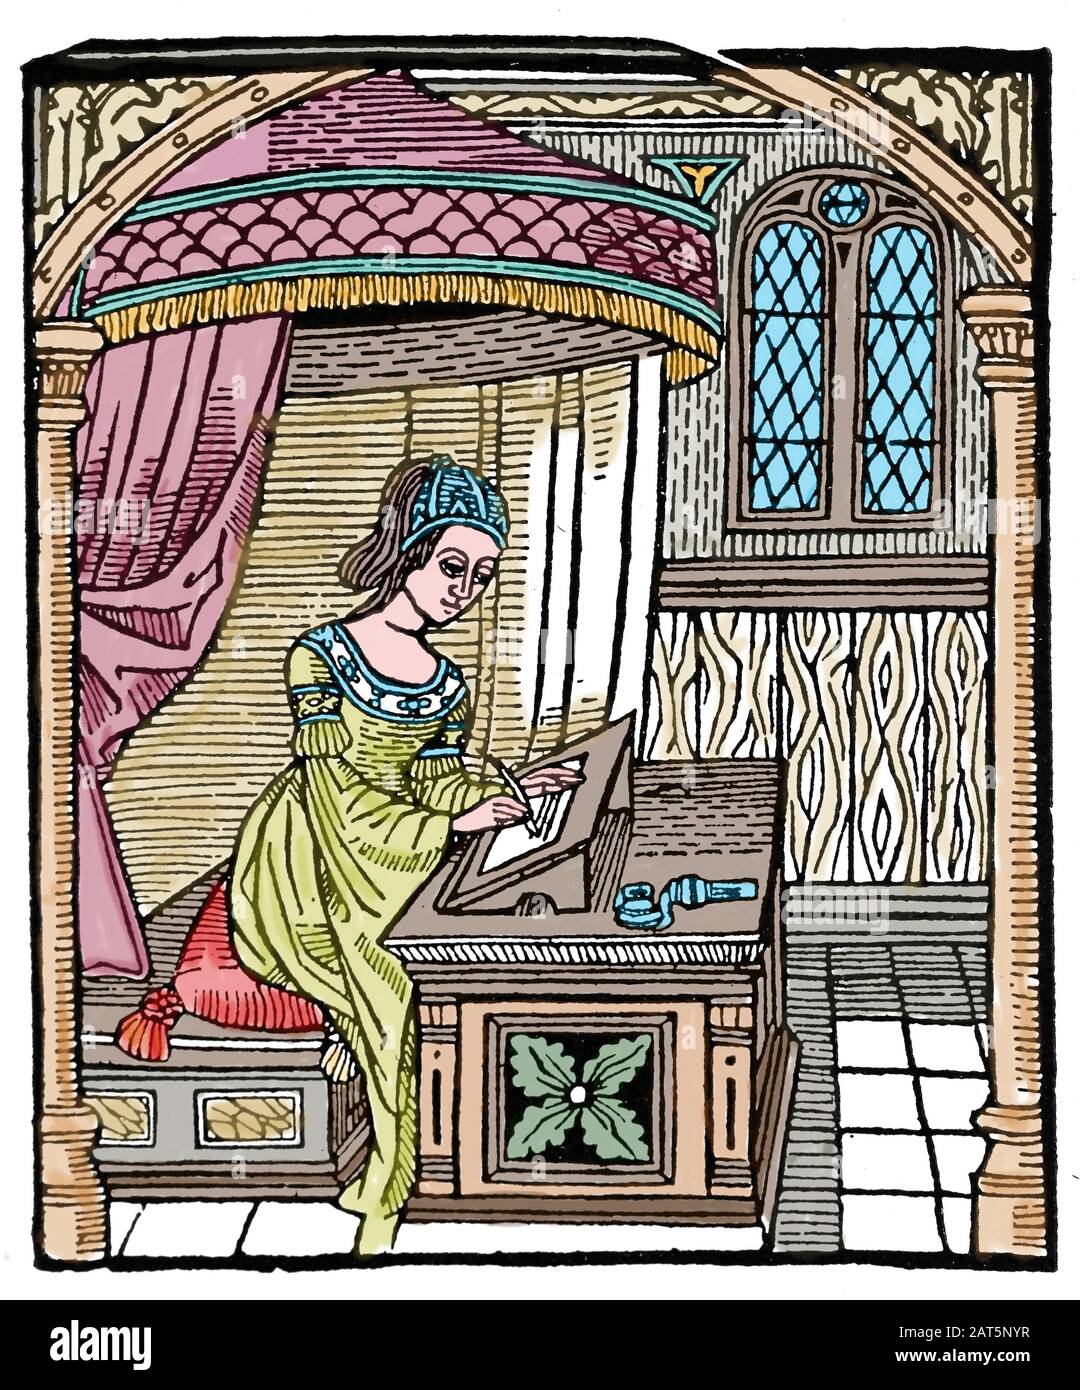 Diego De San Pedro (1437-1498). Écrivain castillan. Prison d'Amour, 1492. La princesse Laureola écrit une lettre. Gravure. Banque D'Images